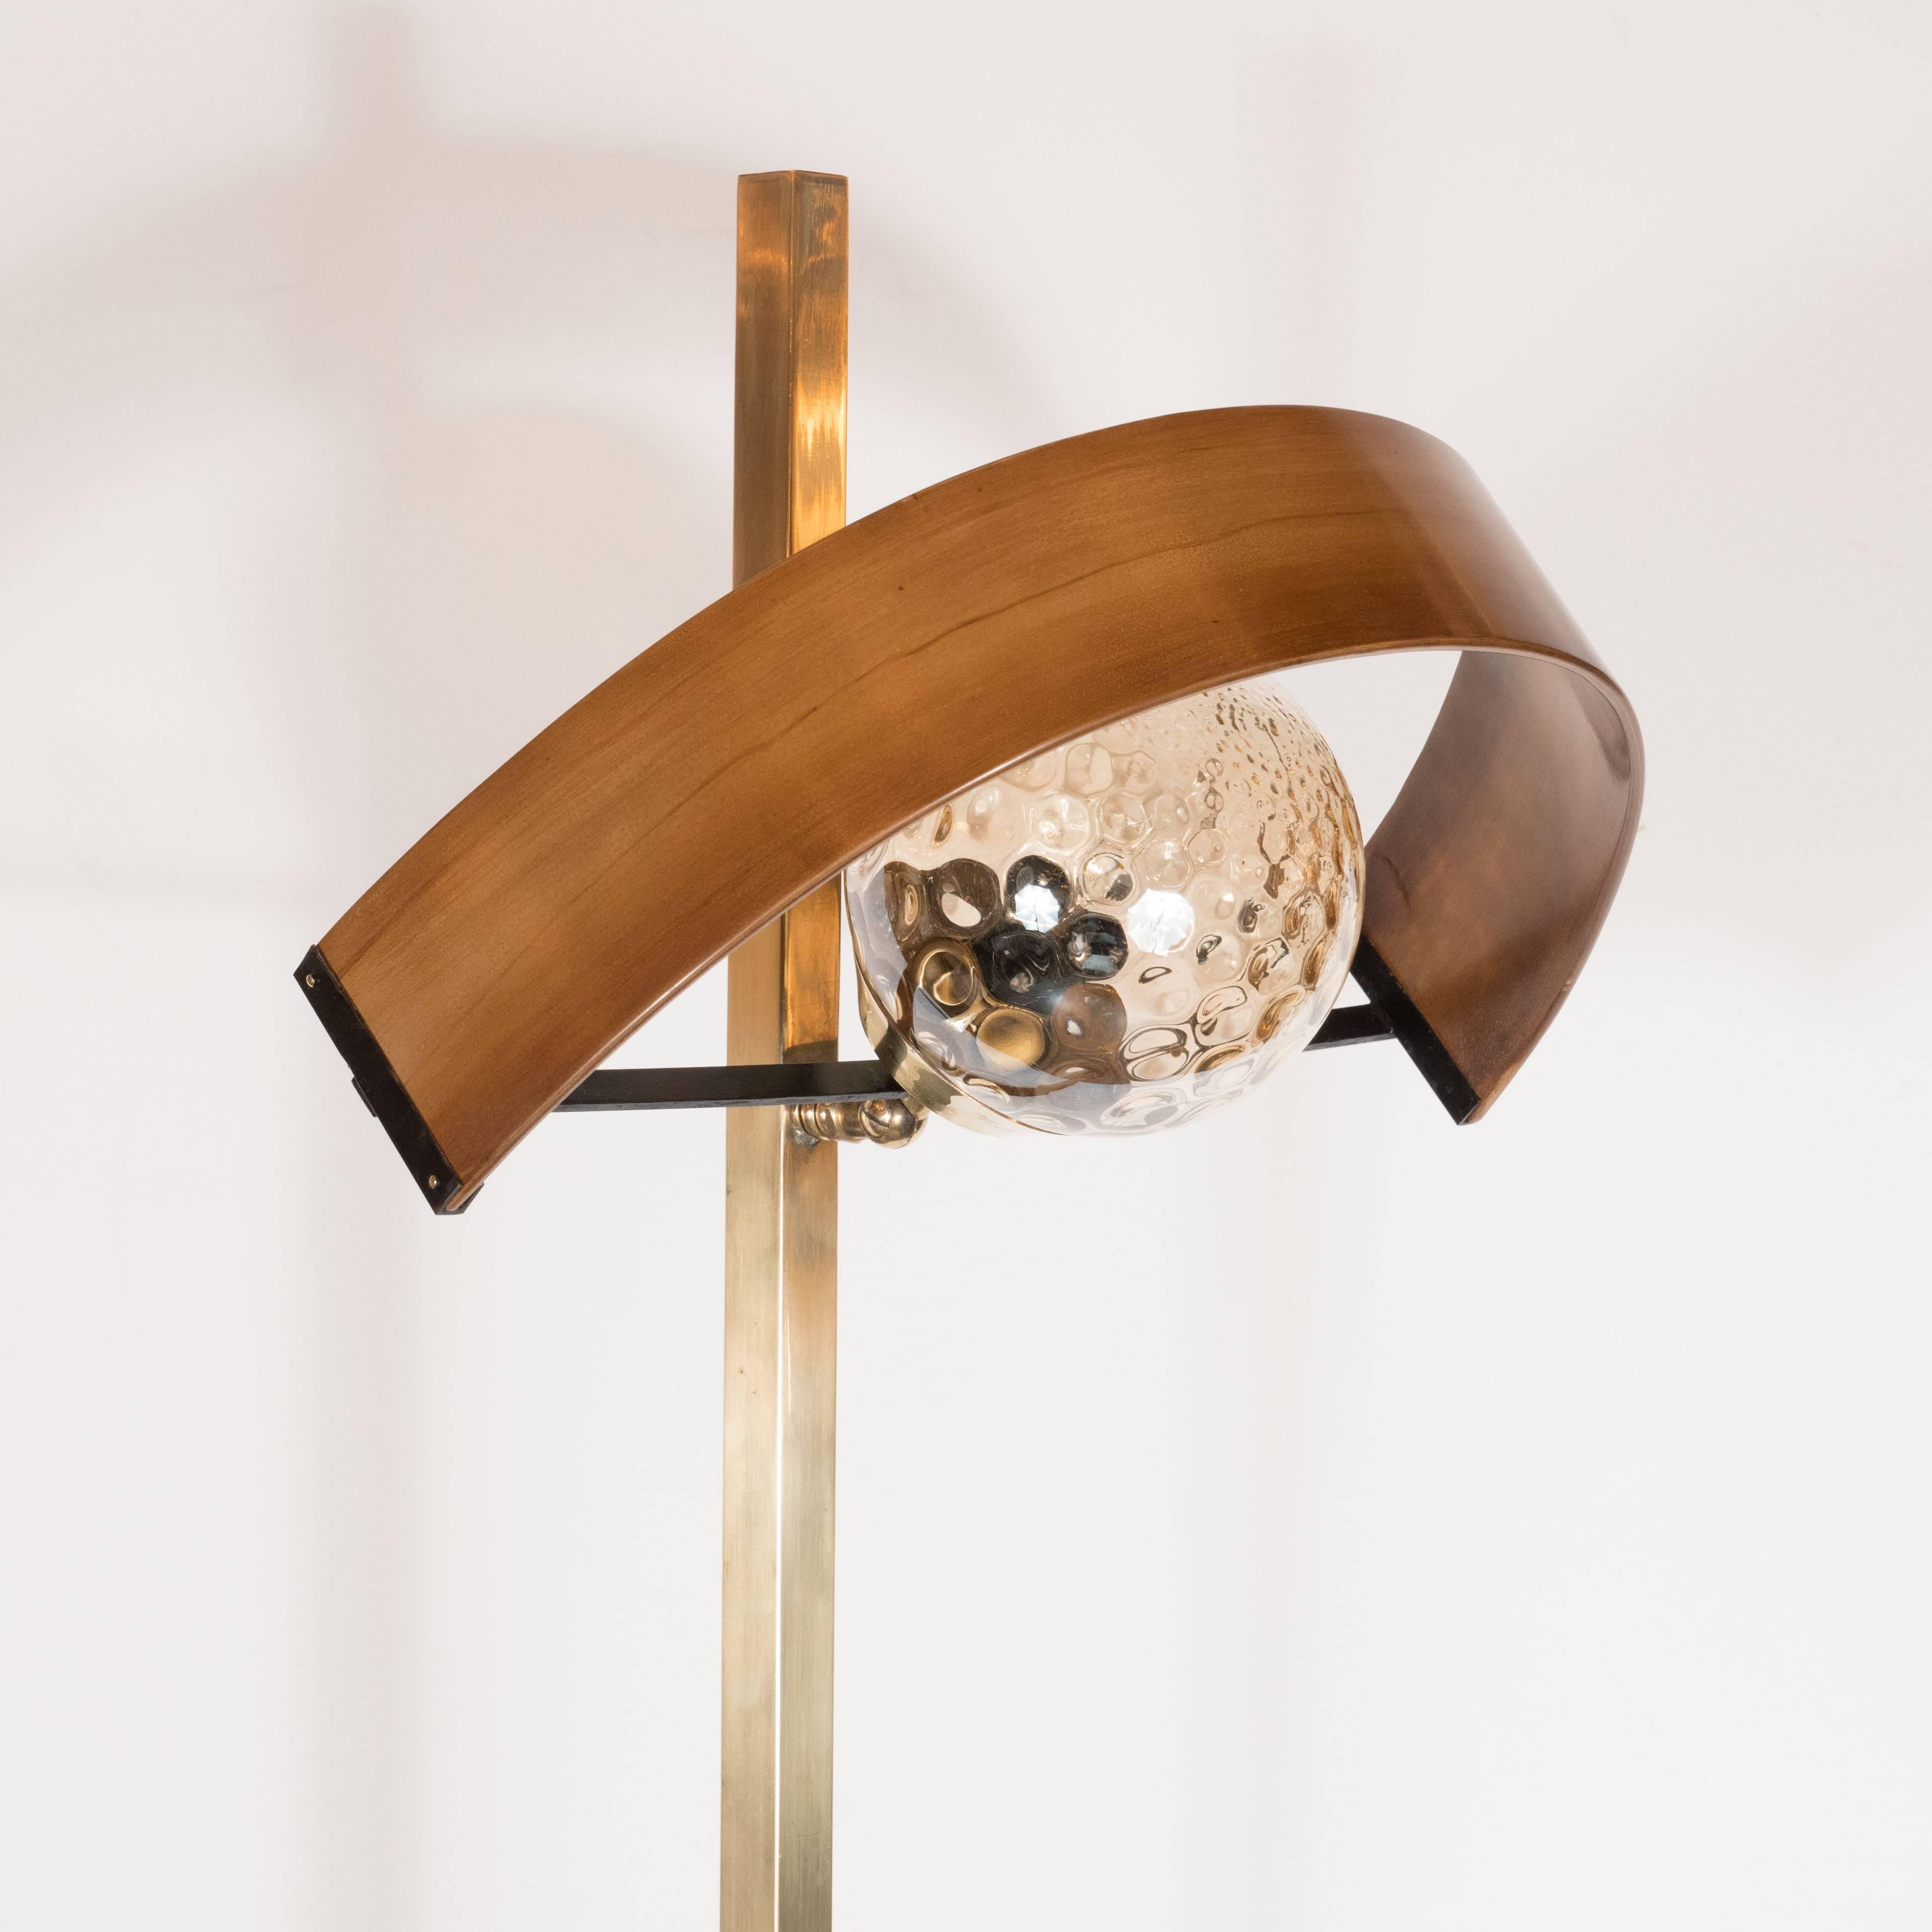 Mid-20th Century Sculptural Italian Mid-Century Modern Brass, Walnut & Textured Glass Floor Lamp